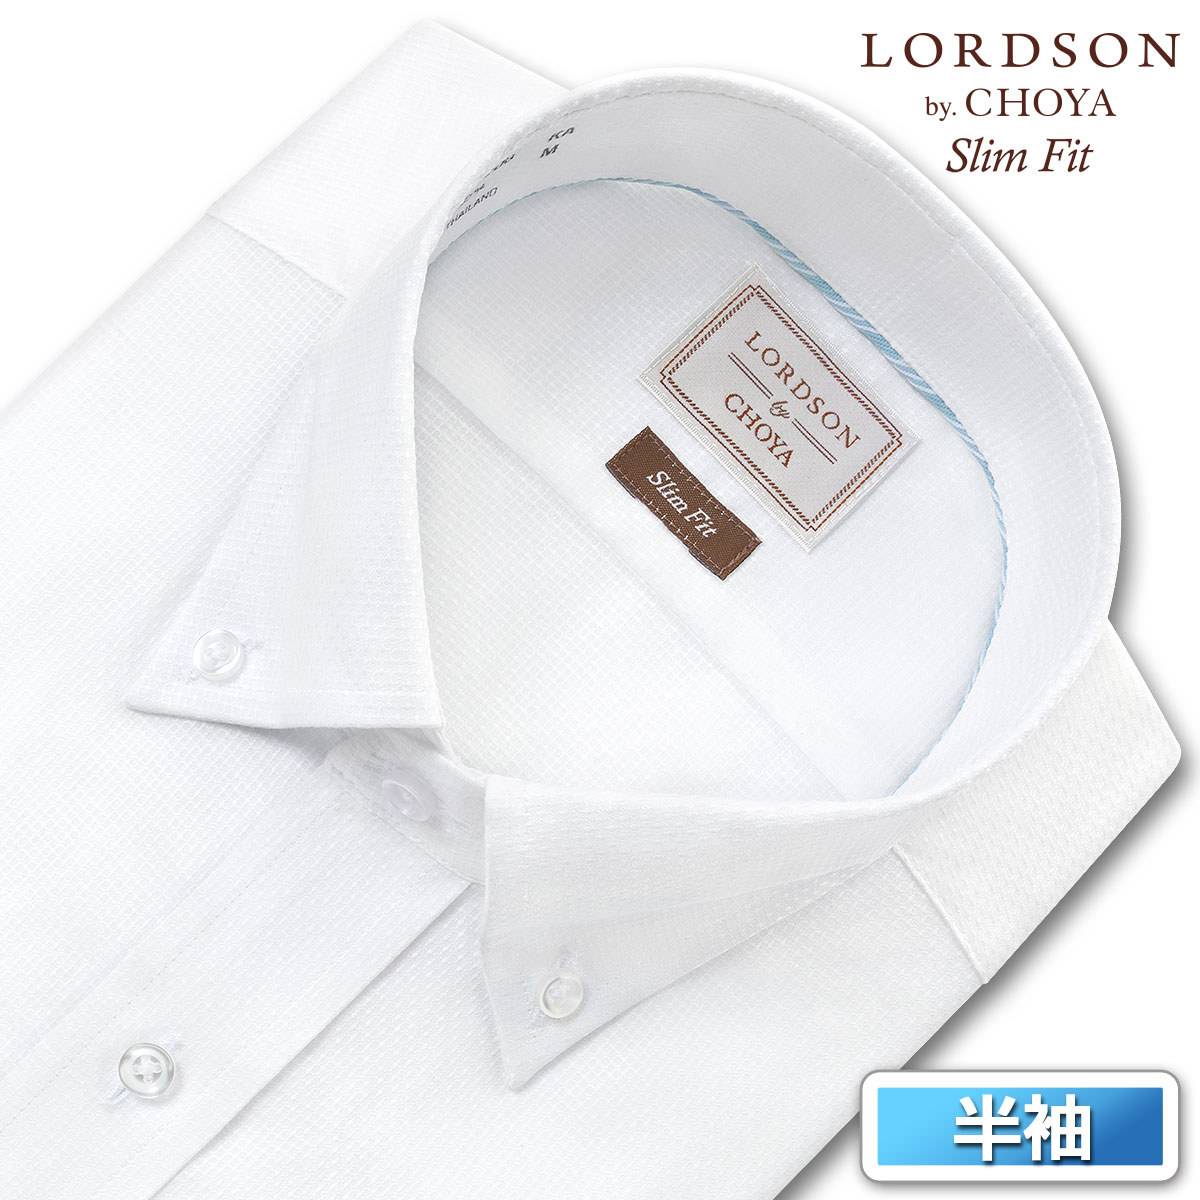 ロードソン 半袖 形態安定 ワイシャツ メンズ ボタンダウン Yシャツ 白ドビー ホワイト スリムフィット 綿100% LORDSON by CHOYA(con090-200)のサムネイル